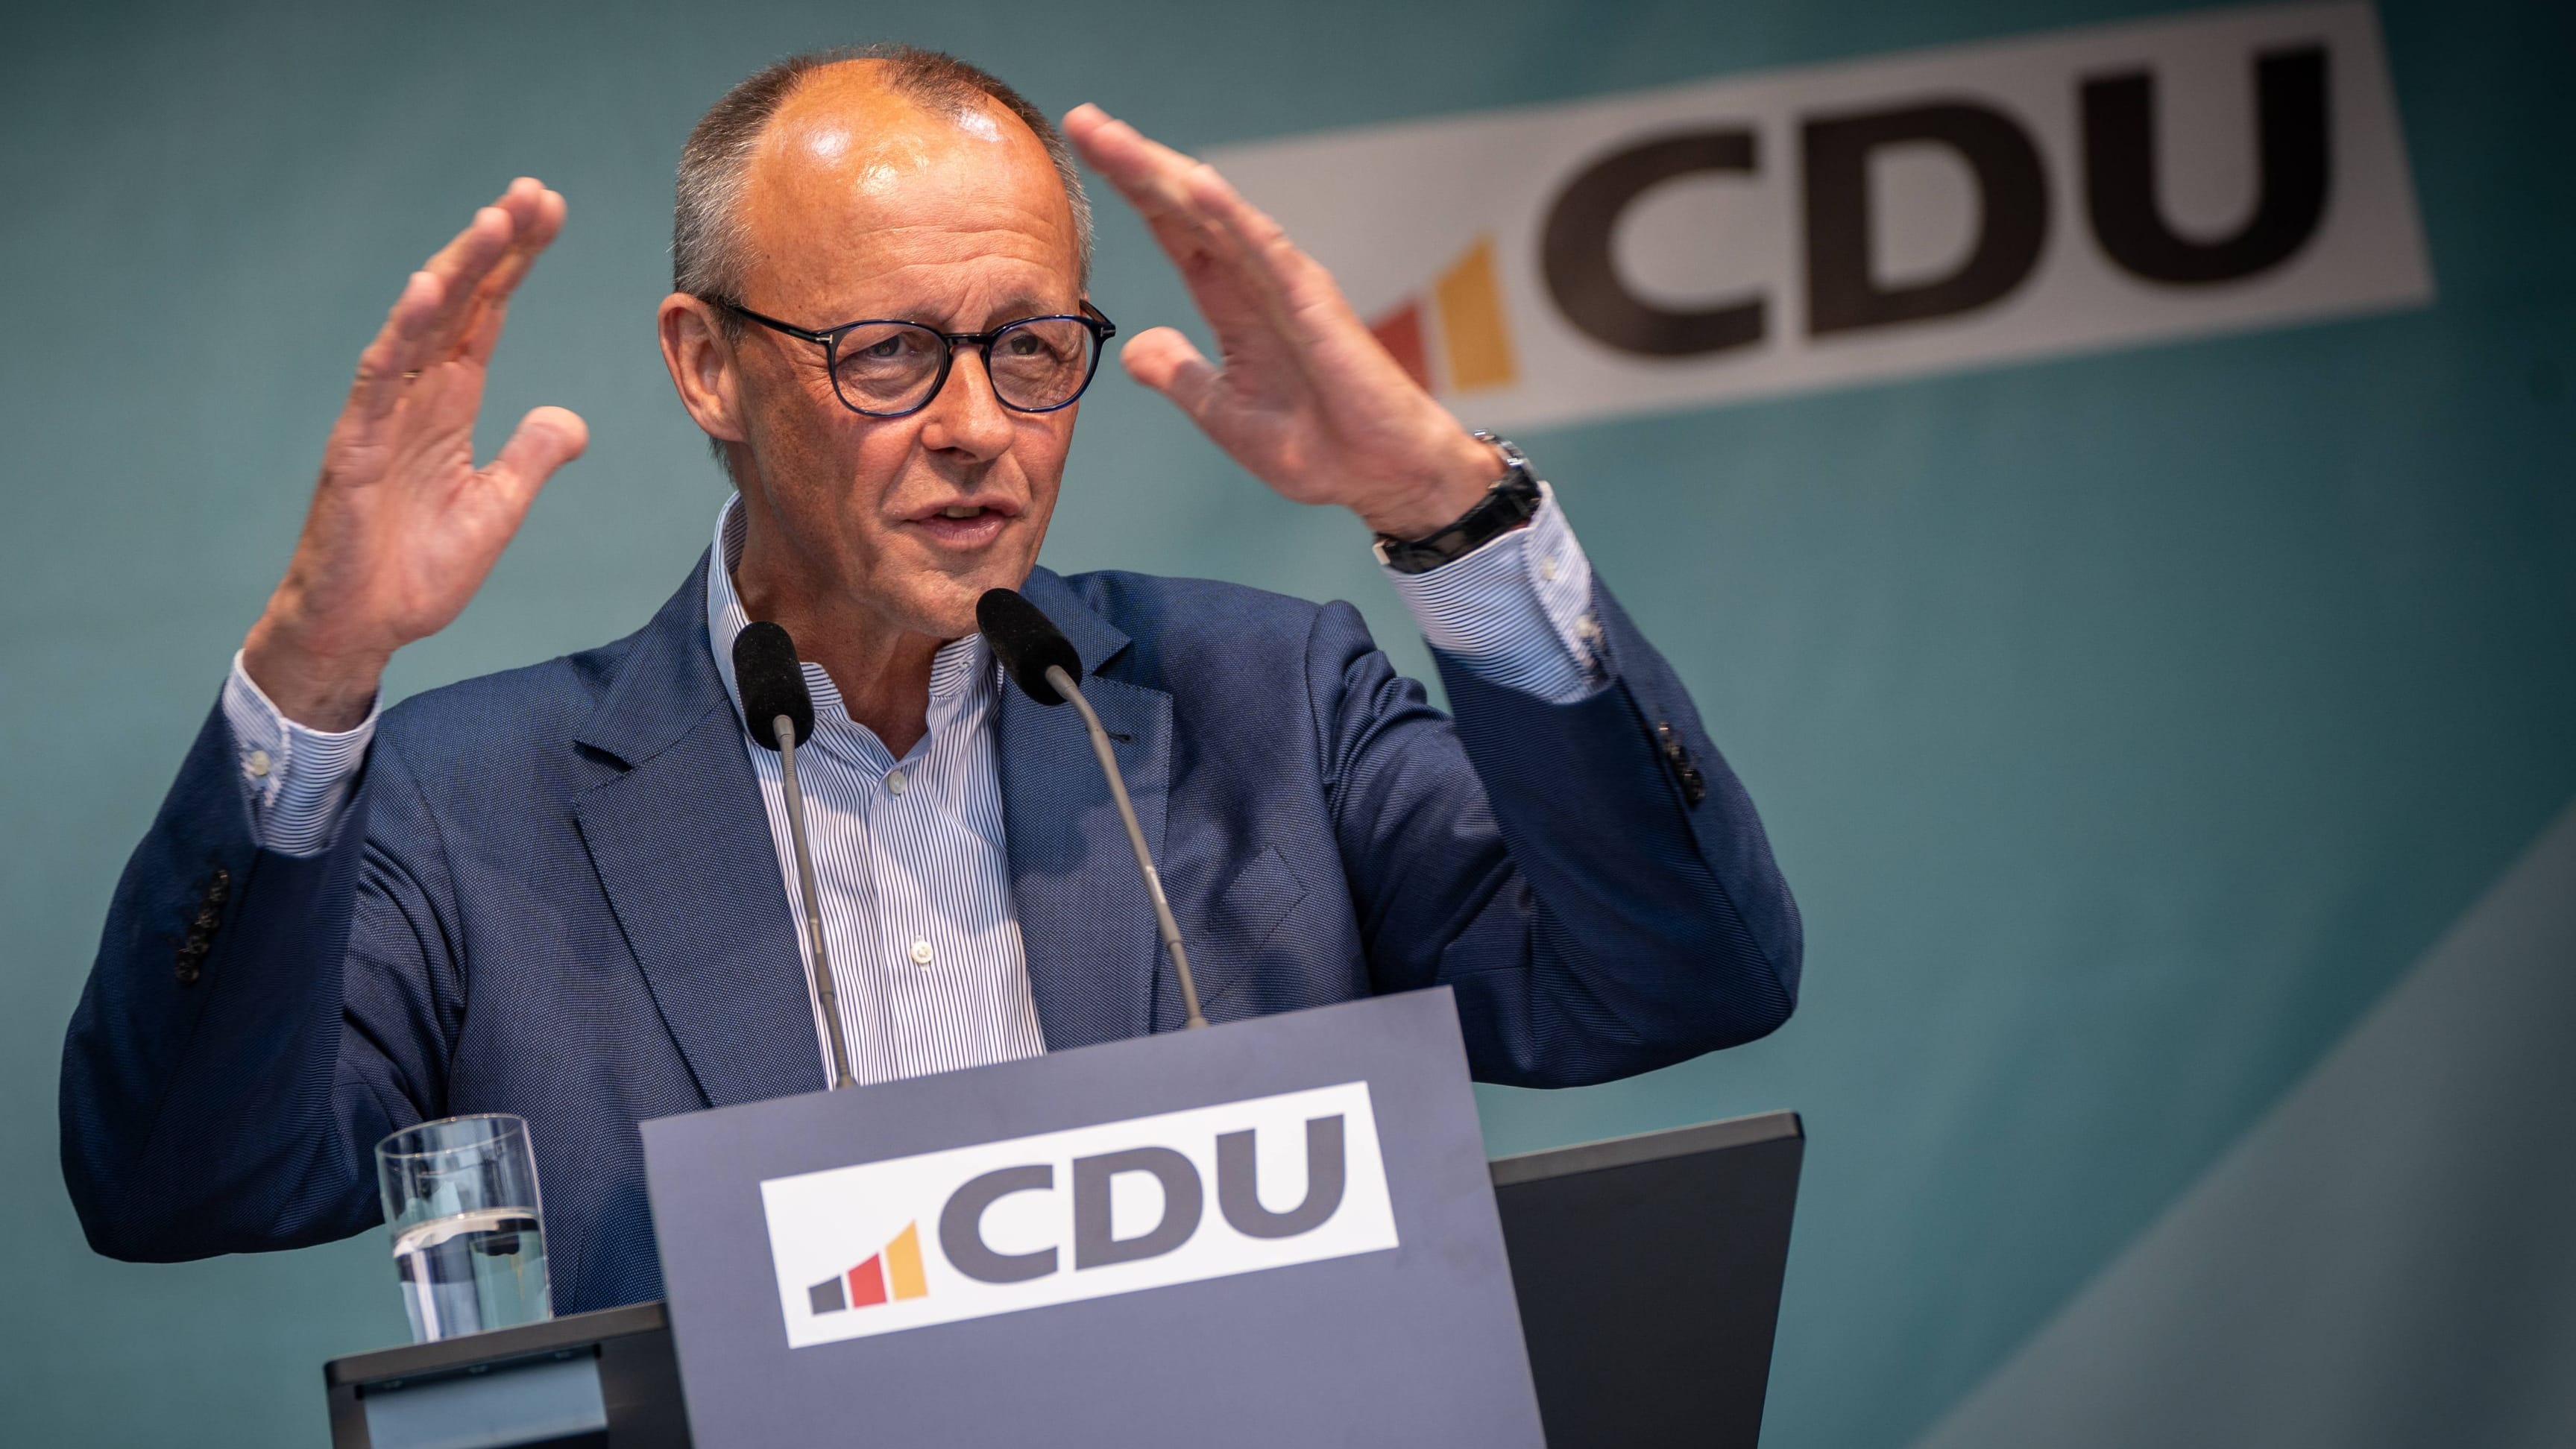 CDU-Wahlkampf in Leipzig: “Ihr seid eine winzig kleine Minderheit”